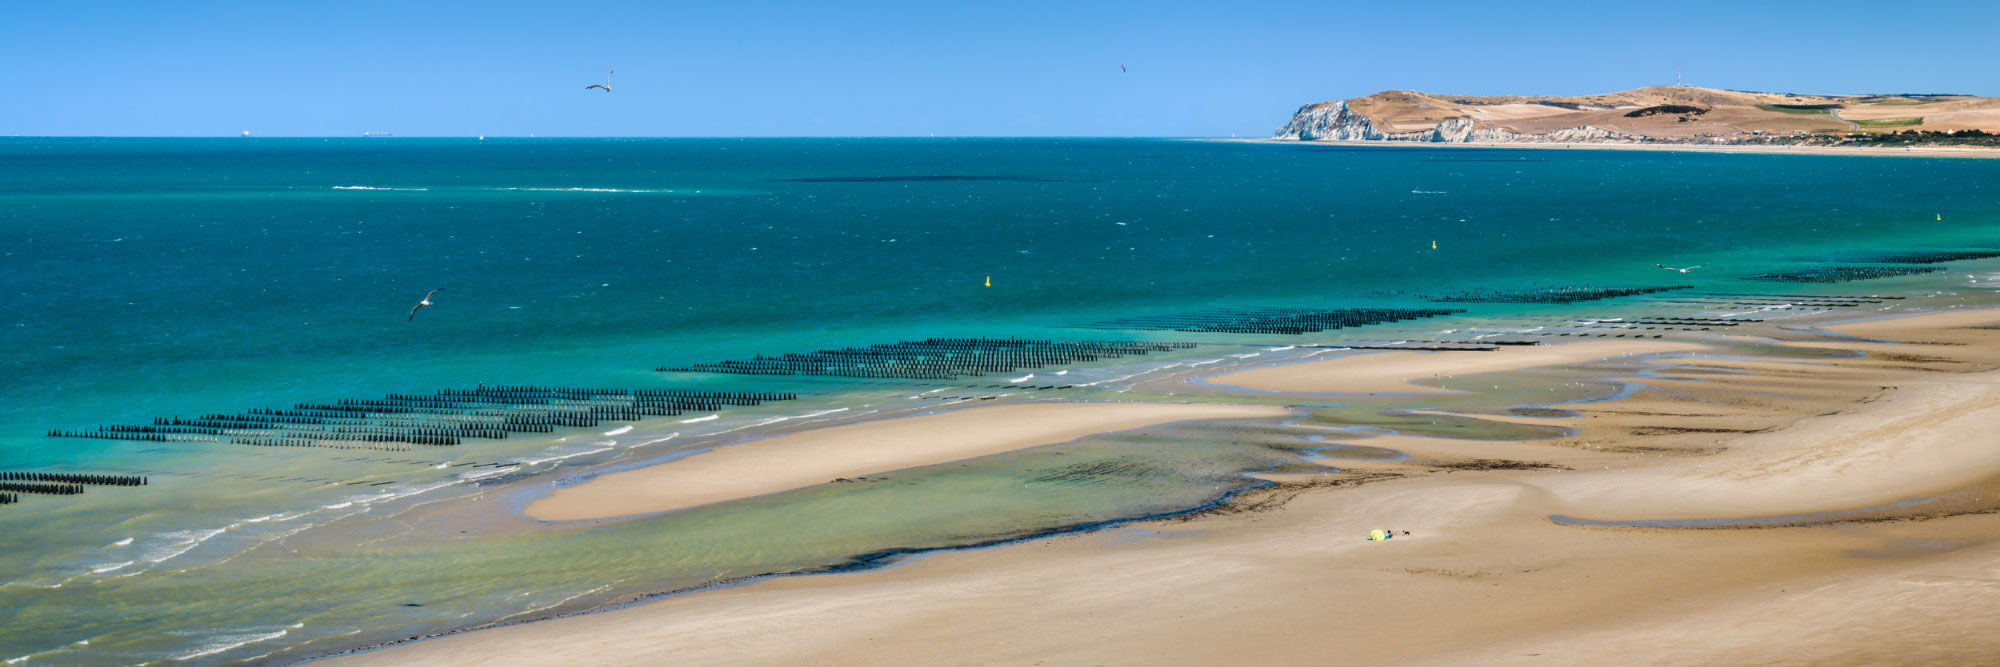 Plage de sable, mer turquoise et Cap Blanc Nez, Wissant, Côte d'opale